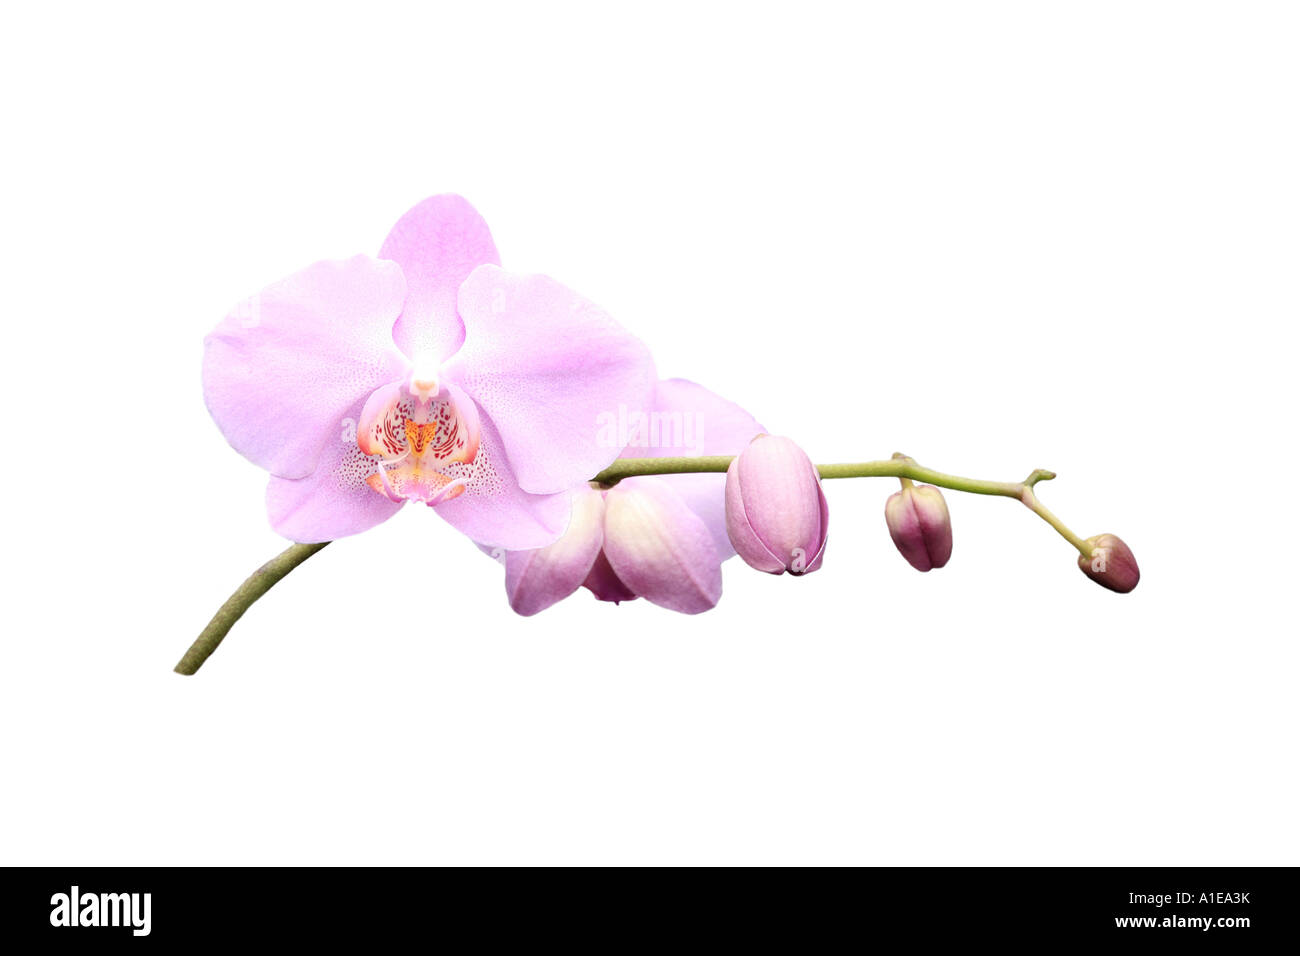 Moth orchid (Phalaenopsis ibrido), ordine di sviluppo dei Fiori, Foto serie 3/9 Foto Stock